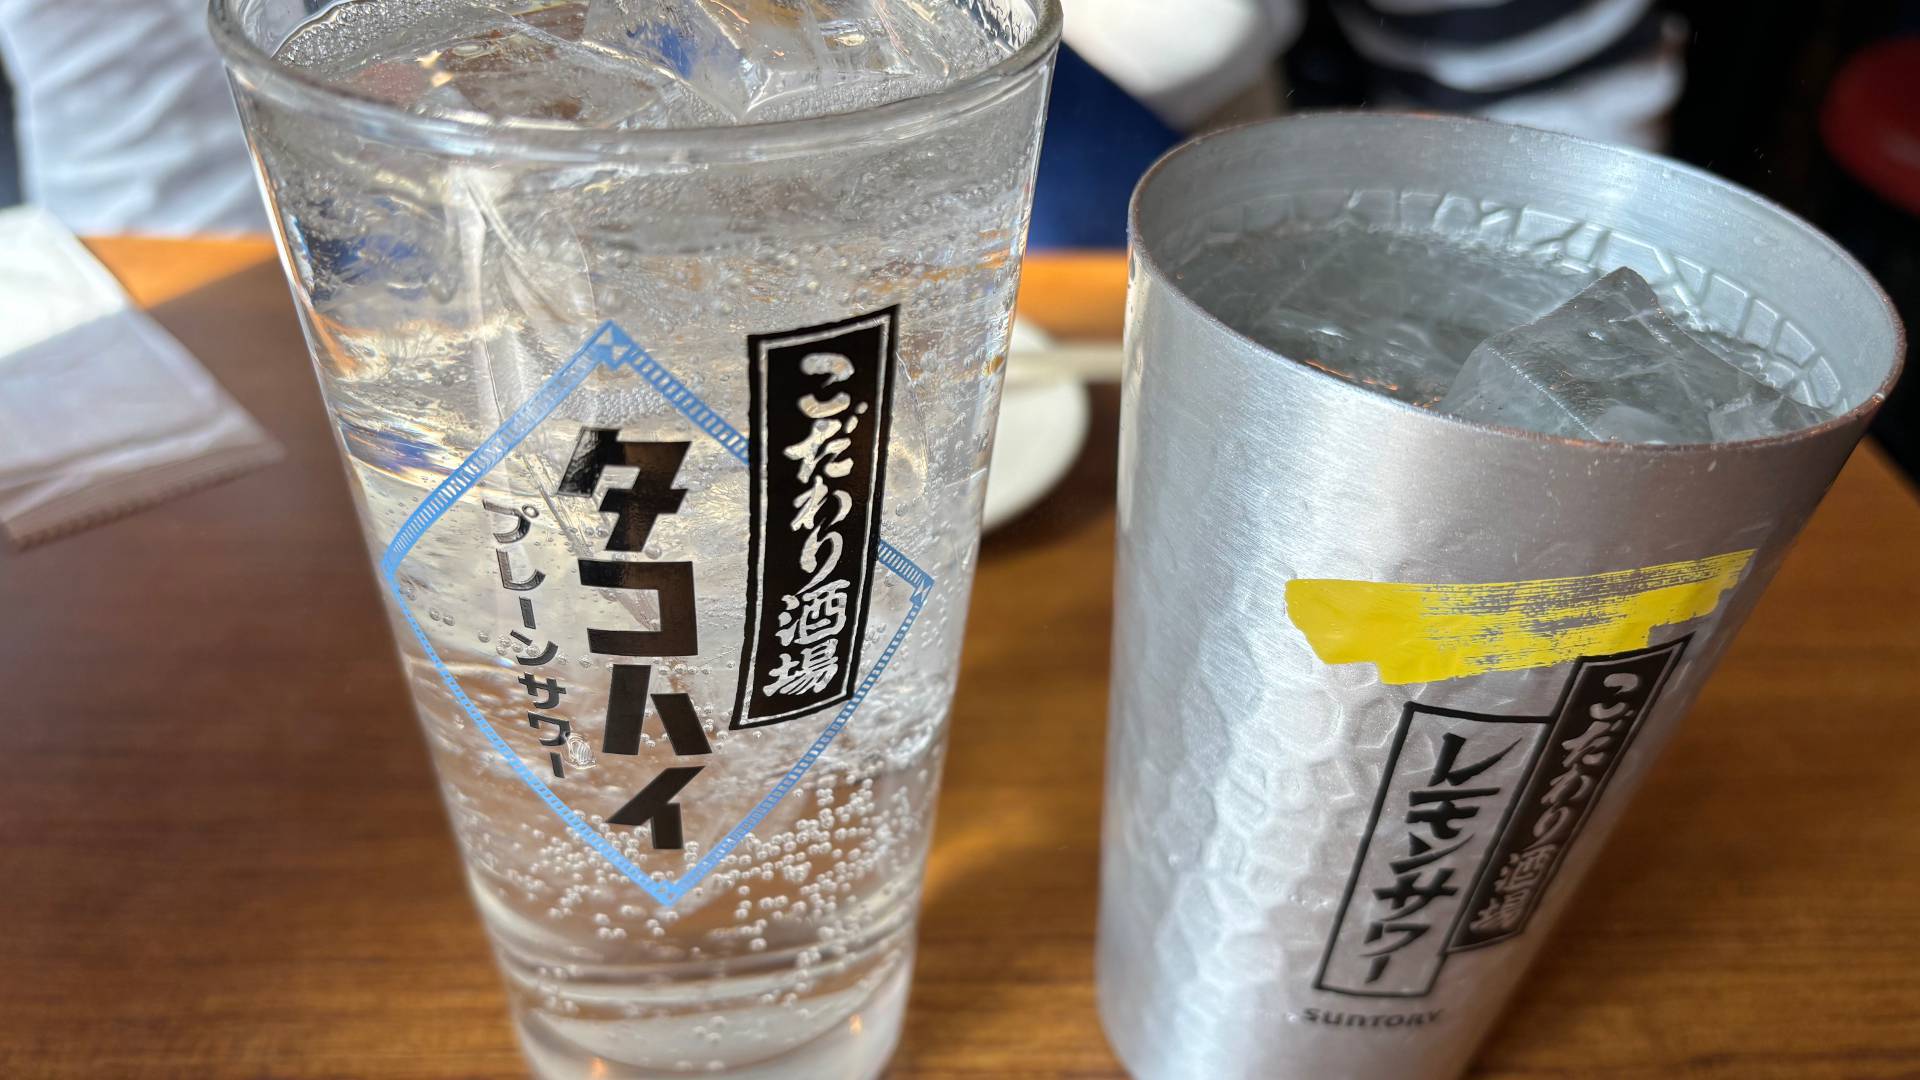 【食べ歩き・飲み歩き】新宿の築地銀だこハイボール酒場で昼飲み